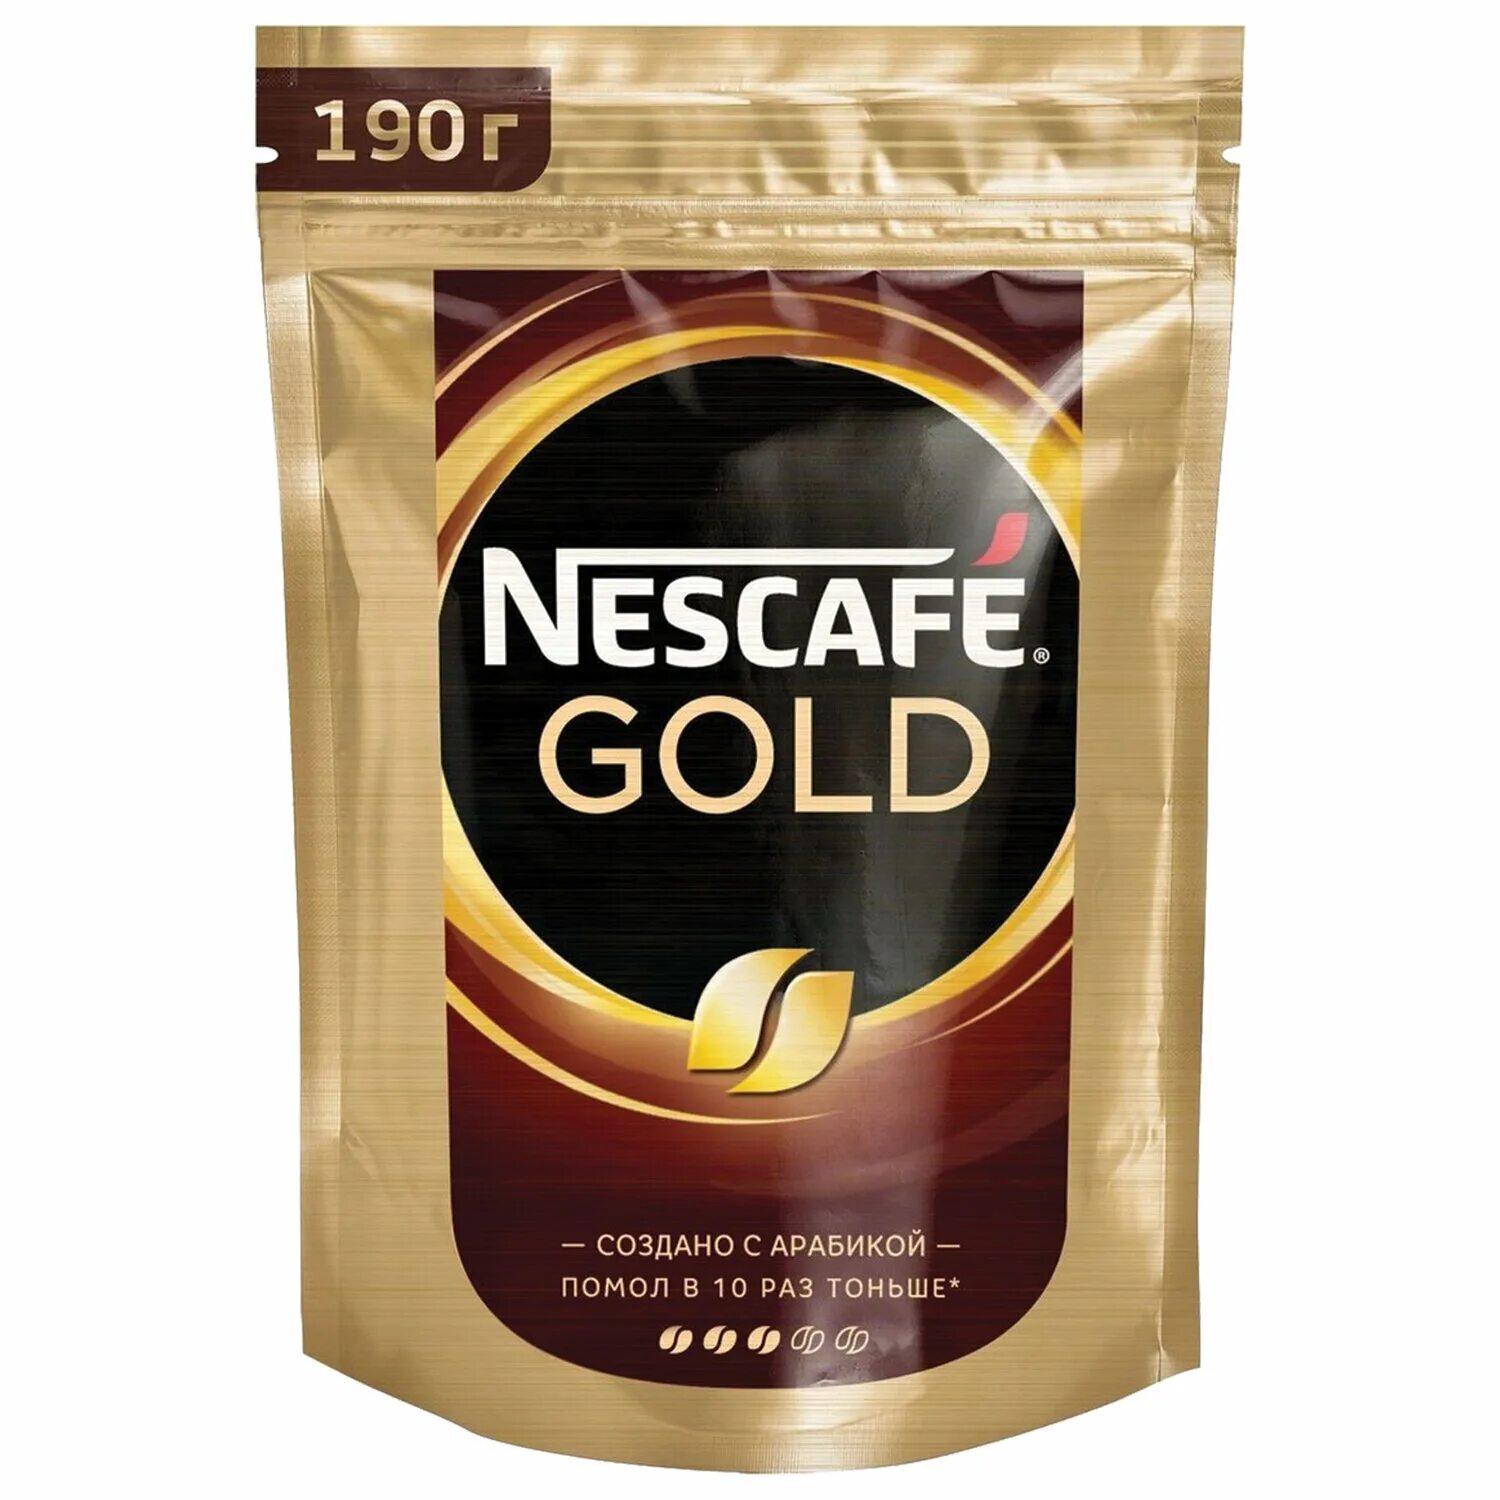 Купить nescafe растворимый кофе. Кофе Нескафе Голд 190. Нескафе Голд 250 гр. Кофе Нескафе Голд 500 гр. Кофе Nescafe Gold 75г.